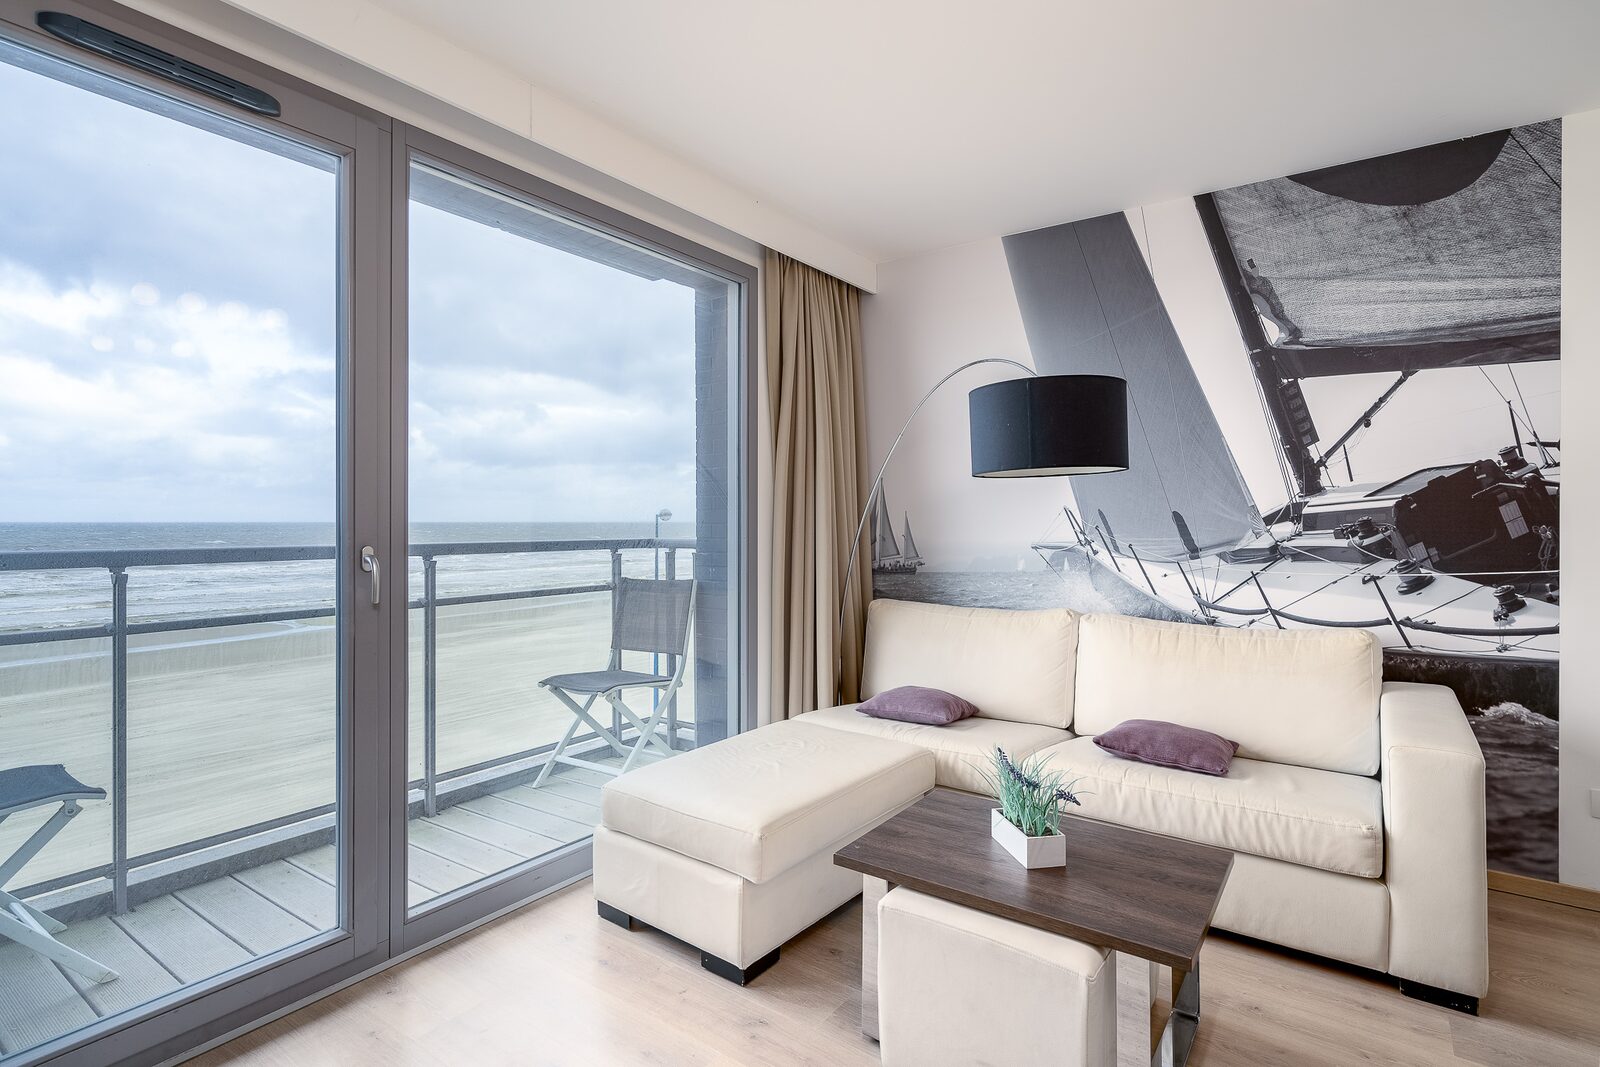 Vakantieverblijf voor 6 personen met balkon en zeezicht 